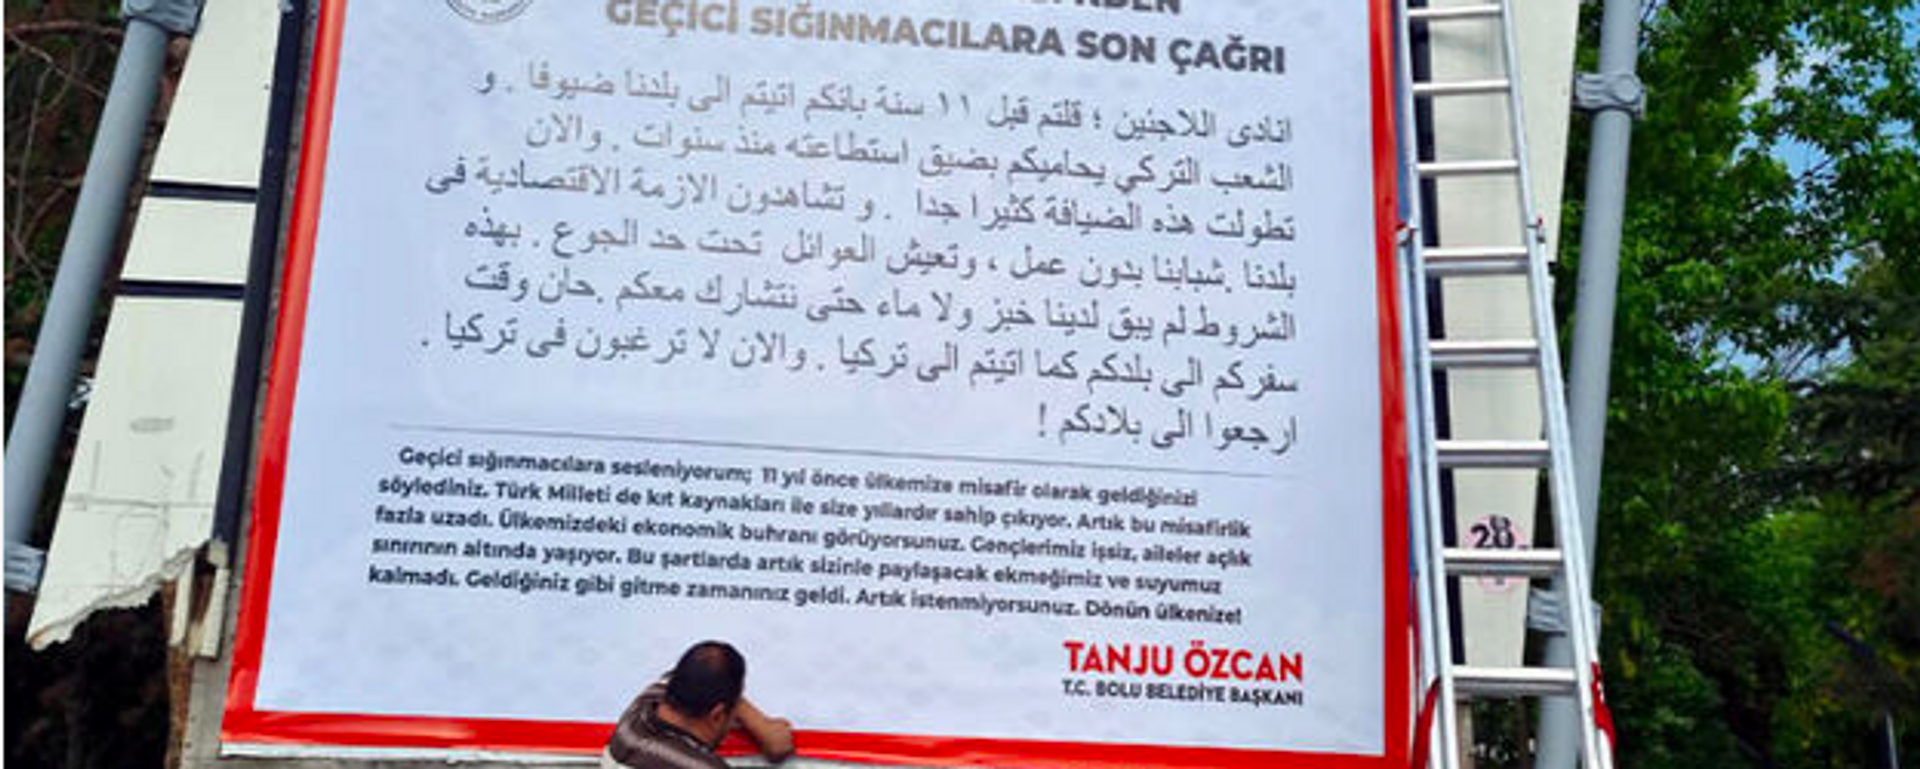 Tanju Özcan’dan sığınmacılara, 'Artık istenmiyorsunuz, dönün ülkenize' ilanı - Sputnik Türkiye, 1920, 18.05.2022